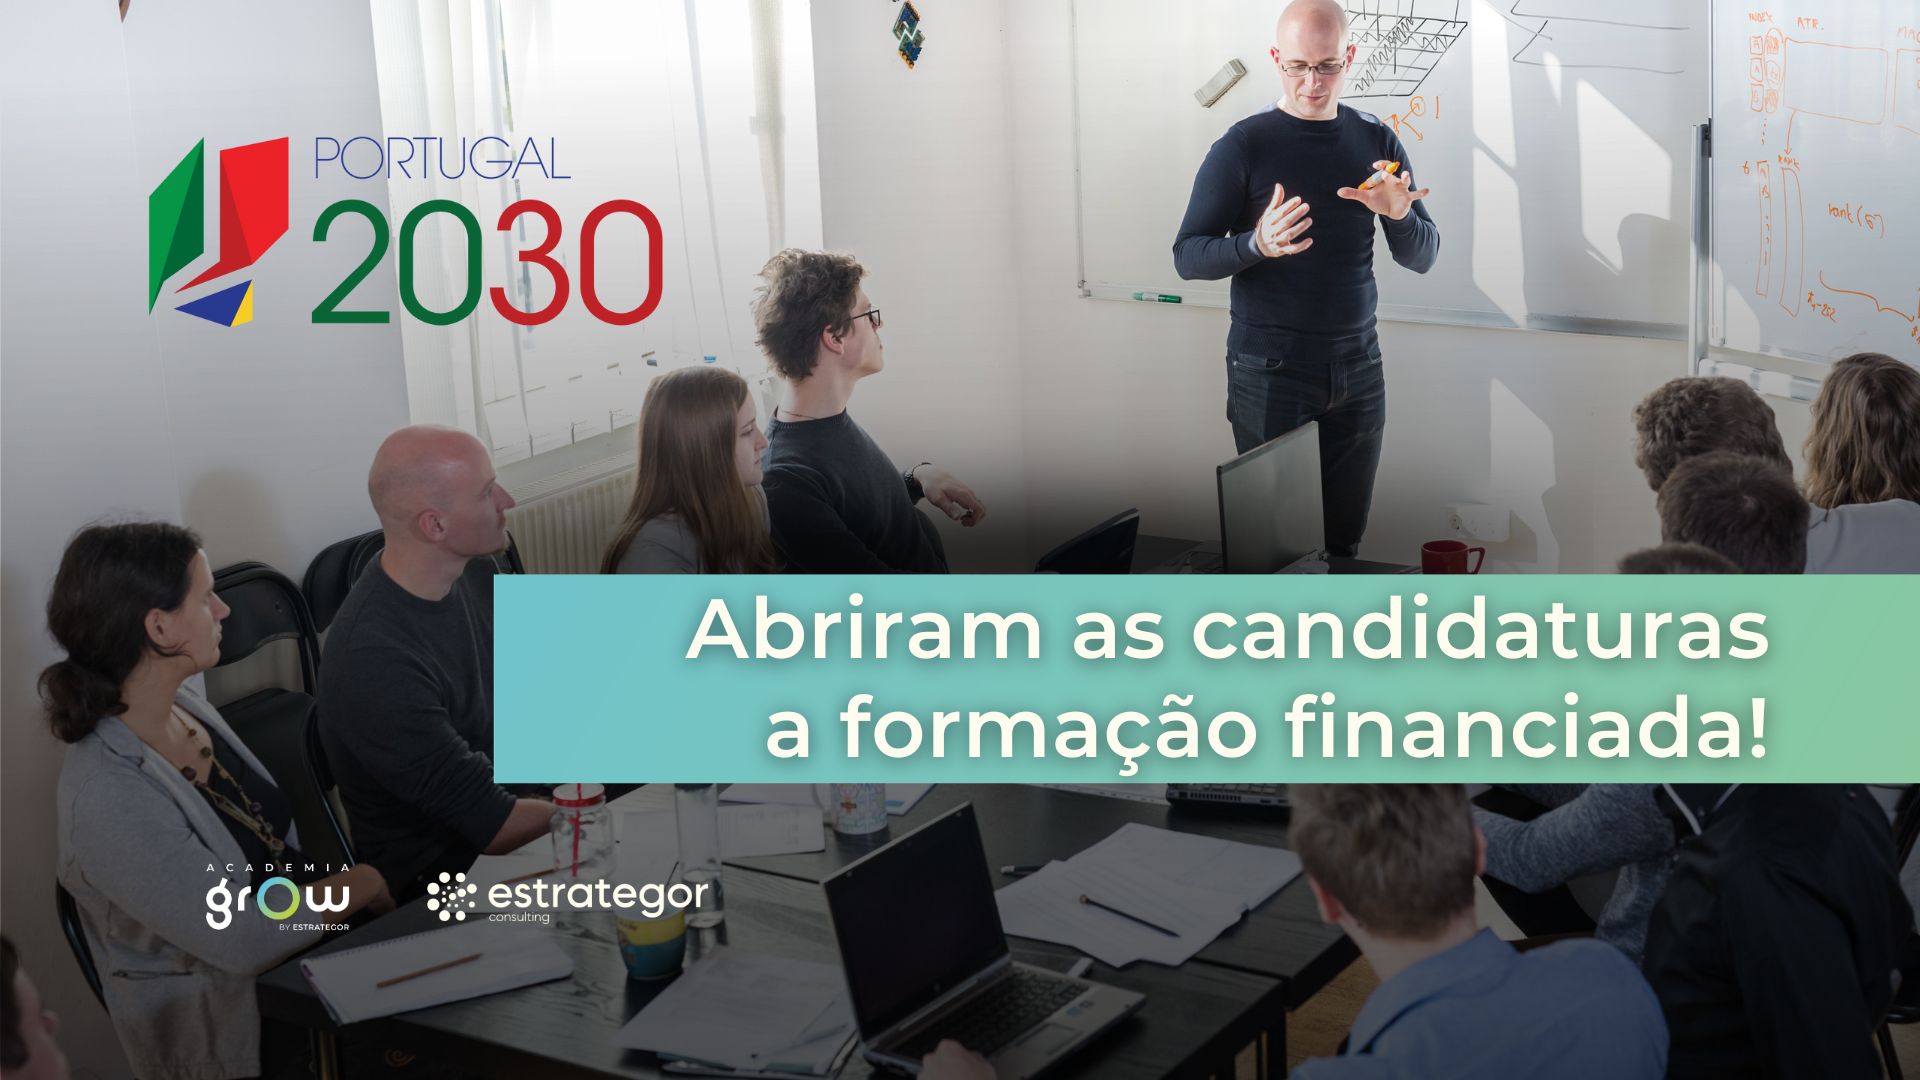 portugal-2030-candidaturas-formacao-financiada